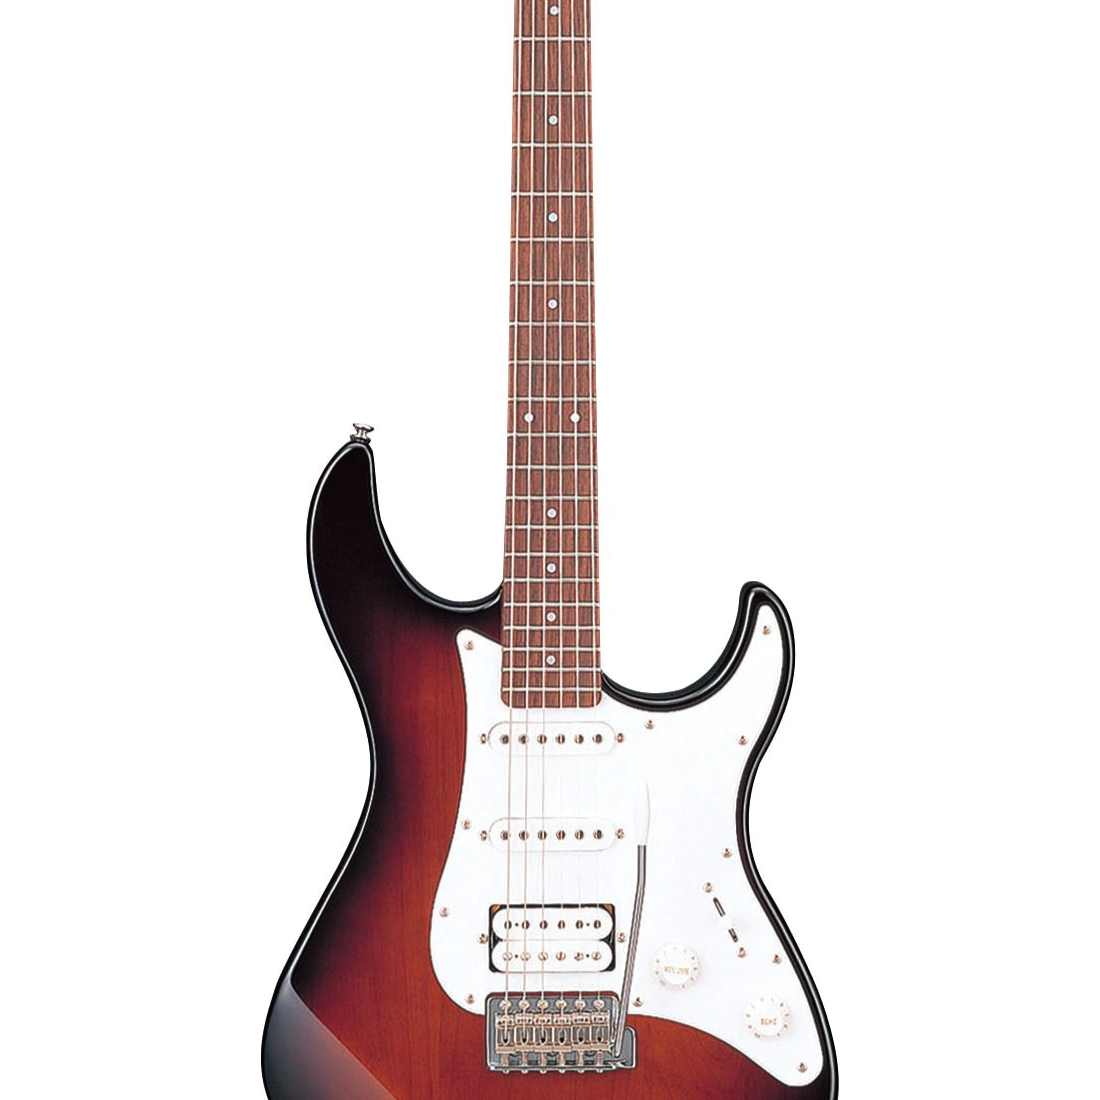 Đàn Guitar điện, Electric Guitar - Yamaha Pacifica PAC112J - Old Violin Sunburst, bộ rung kiểu cổ điển - Hàng chính hãng